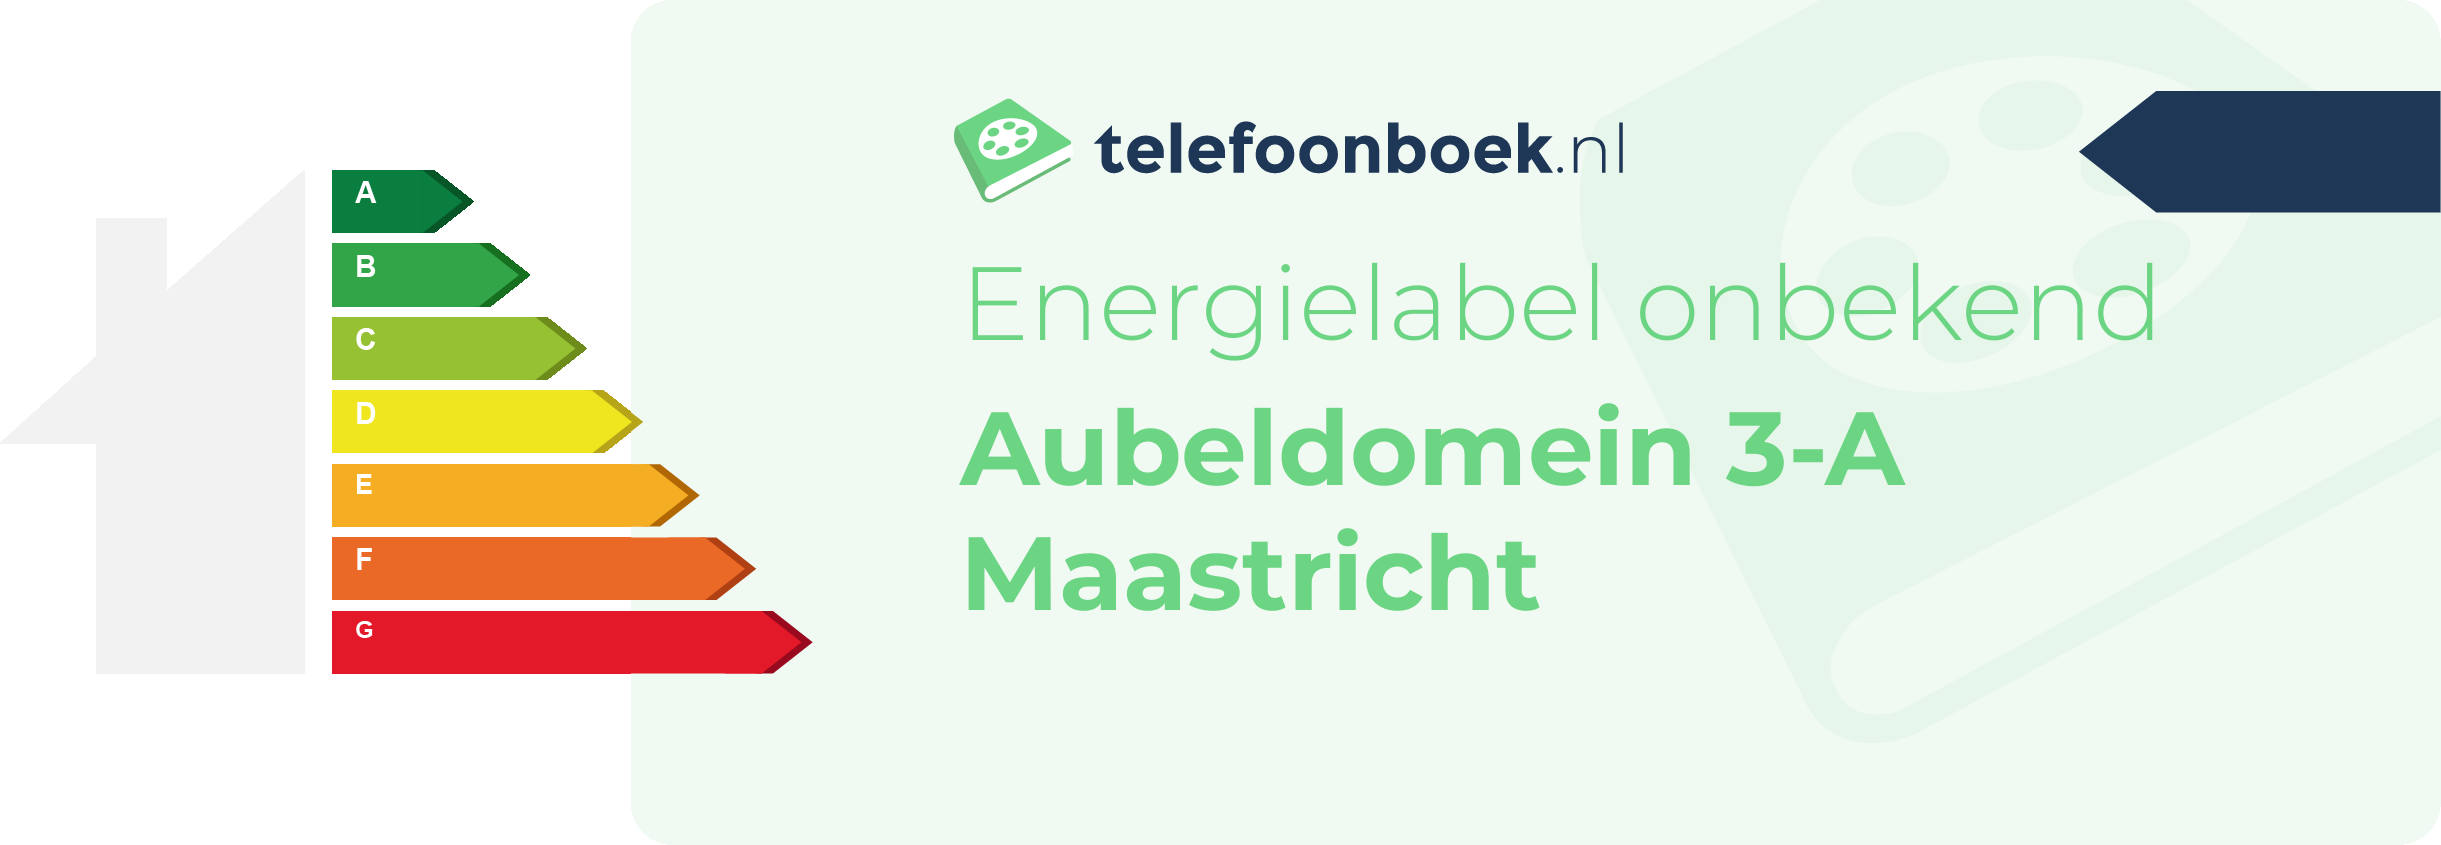 Energielabel Aubeldomein 3-A Maastricht